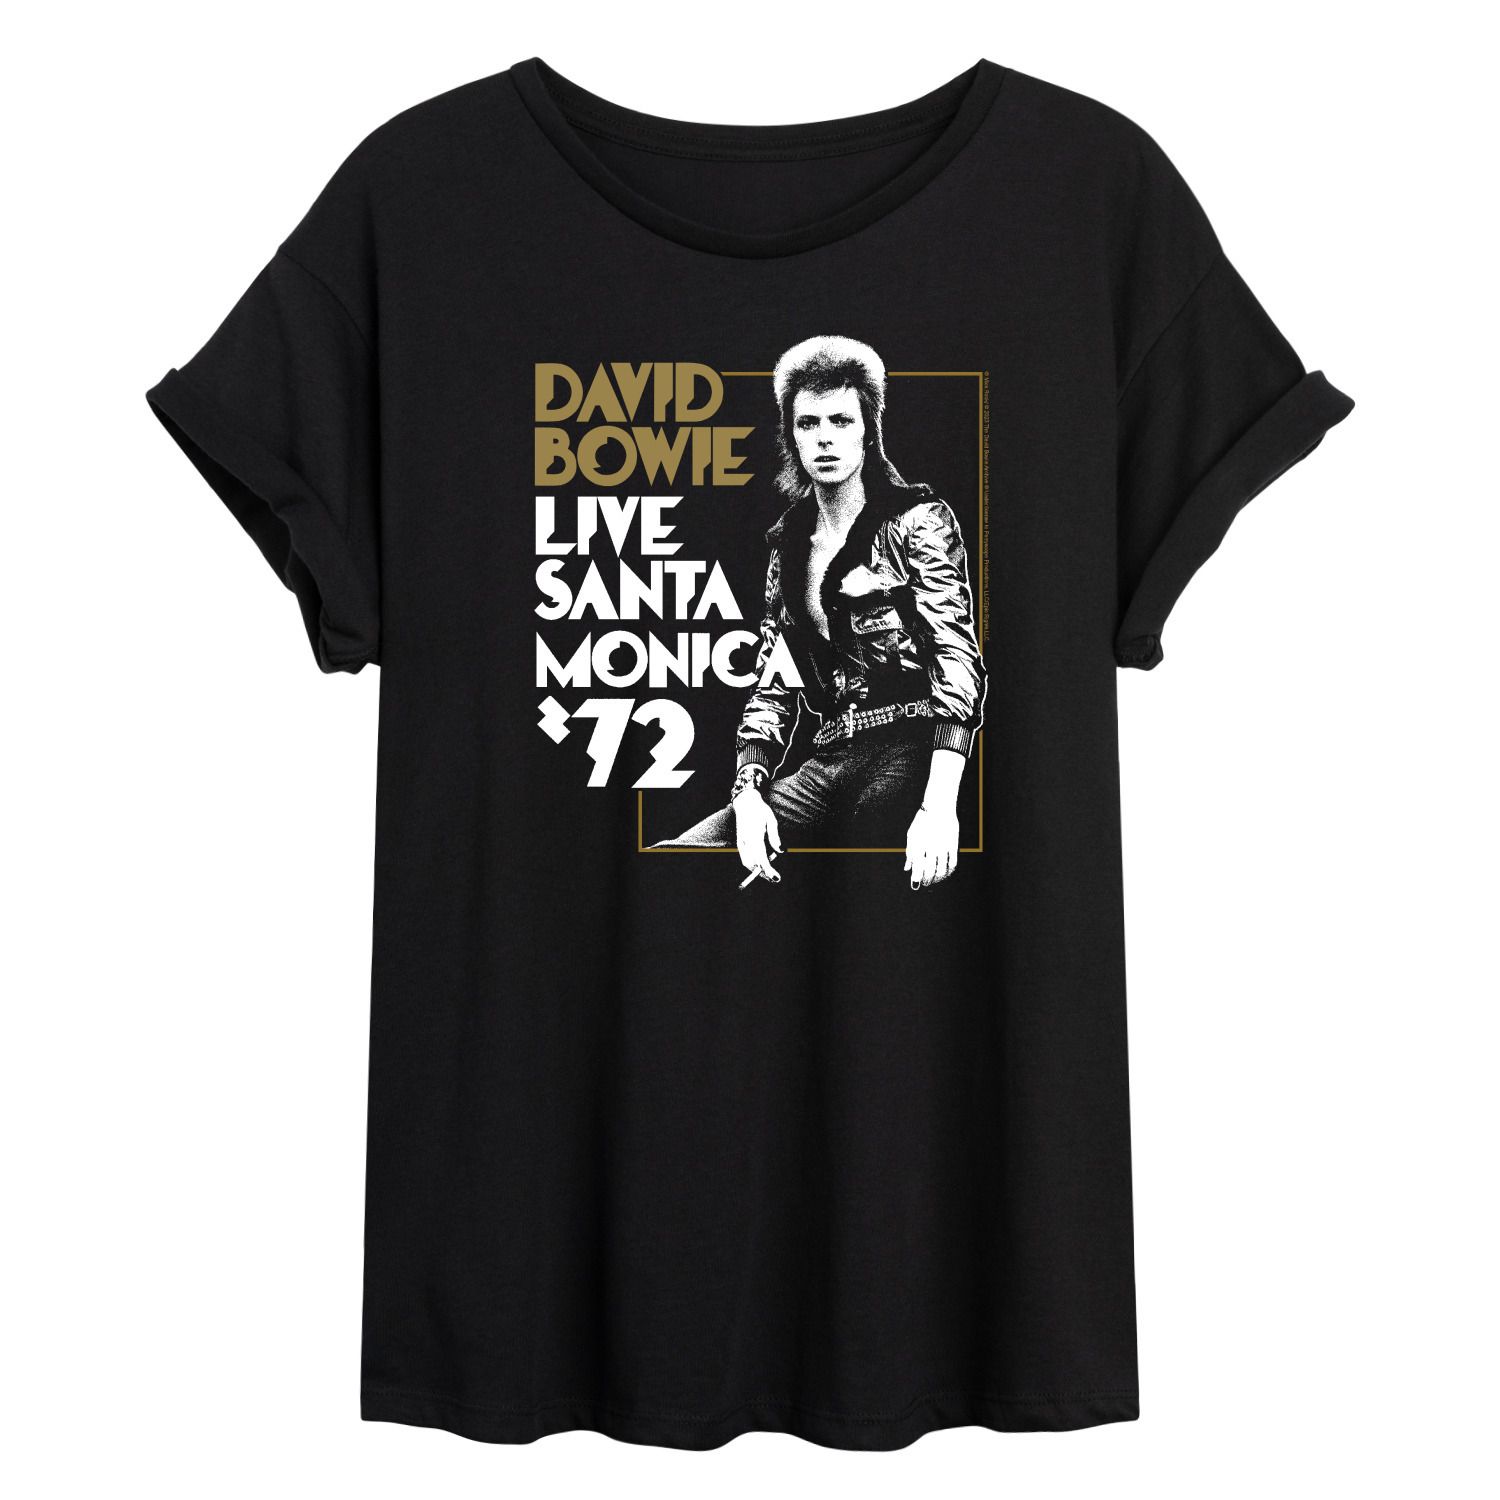 Струящаяся футболка David Bowie Santa Monica для юниоров Licensed Character david bowie live santa monica 72